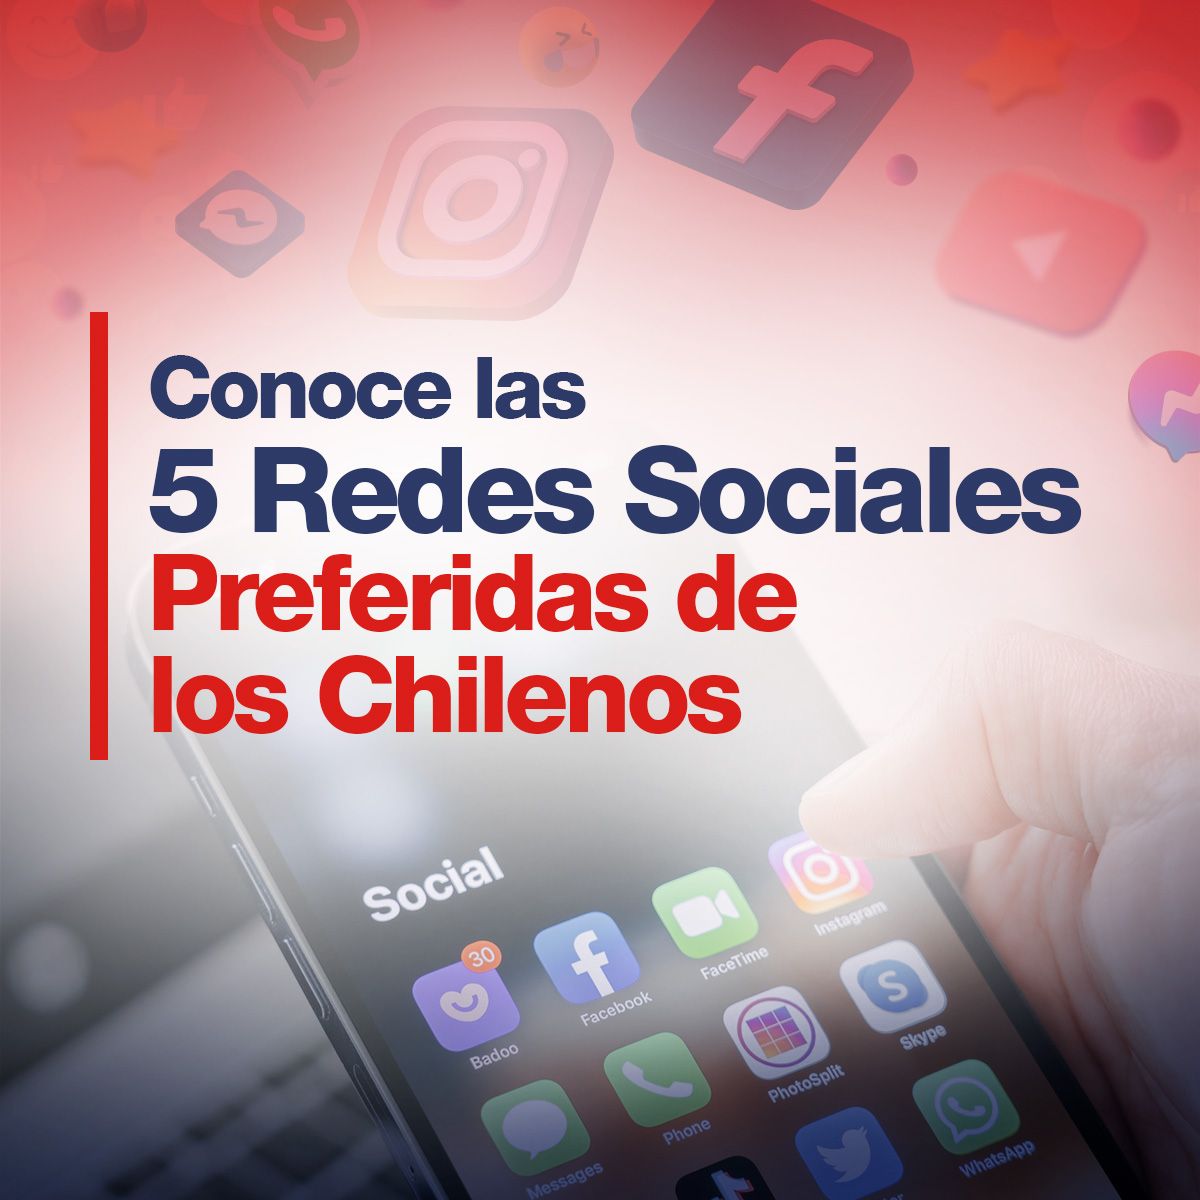 Conoce las 5 Redes Sociales Preferidas de los Chilenos